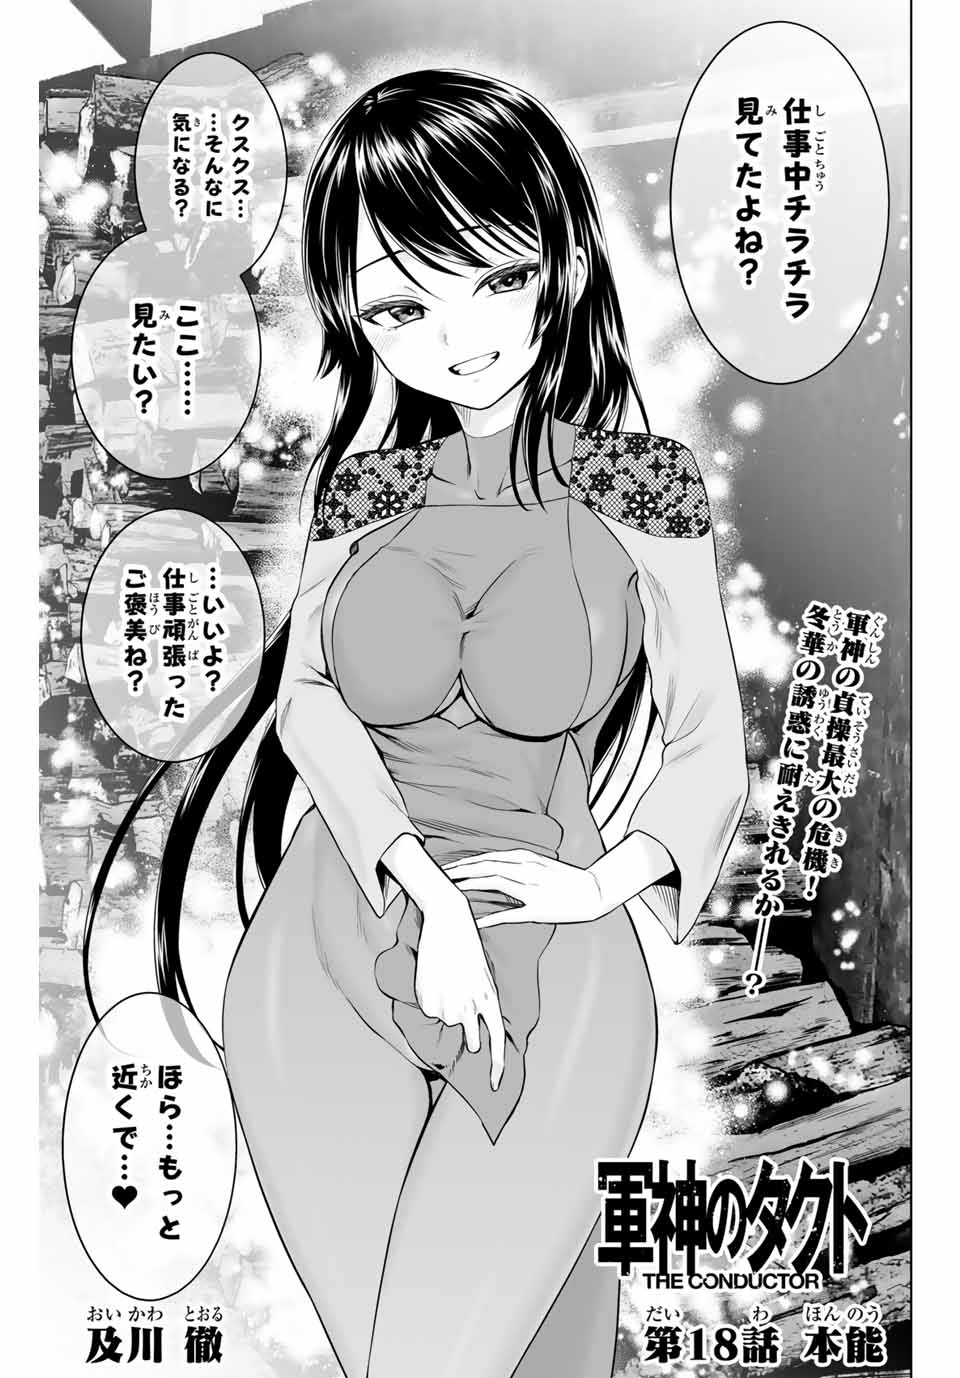 Gunshin No Takuto - Chapter 18 - Page 1